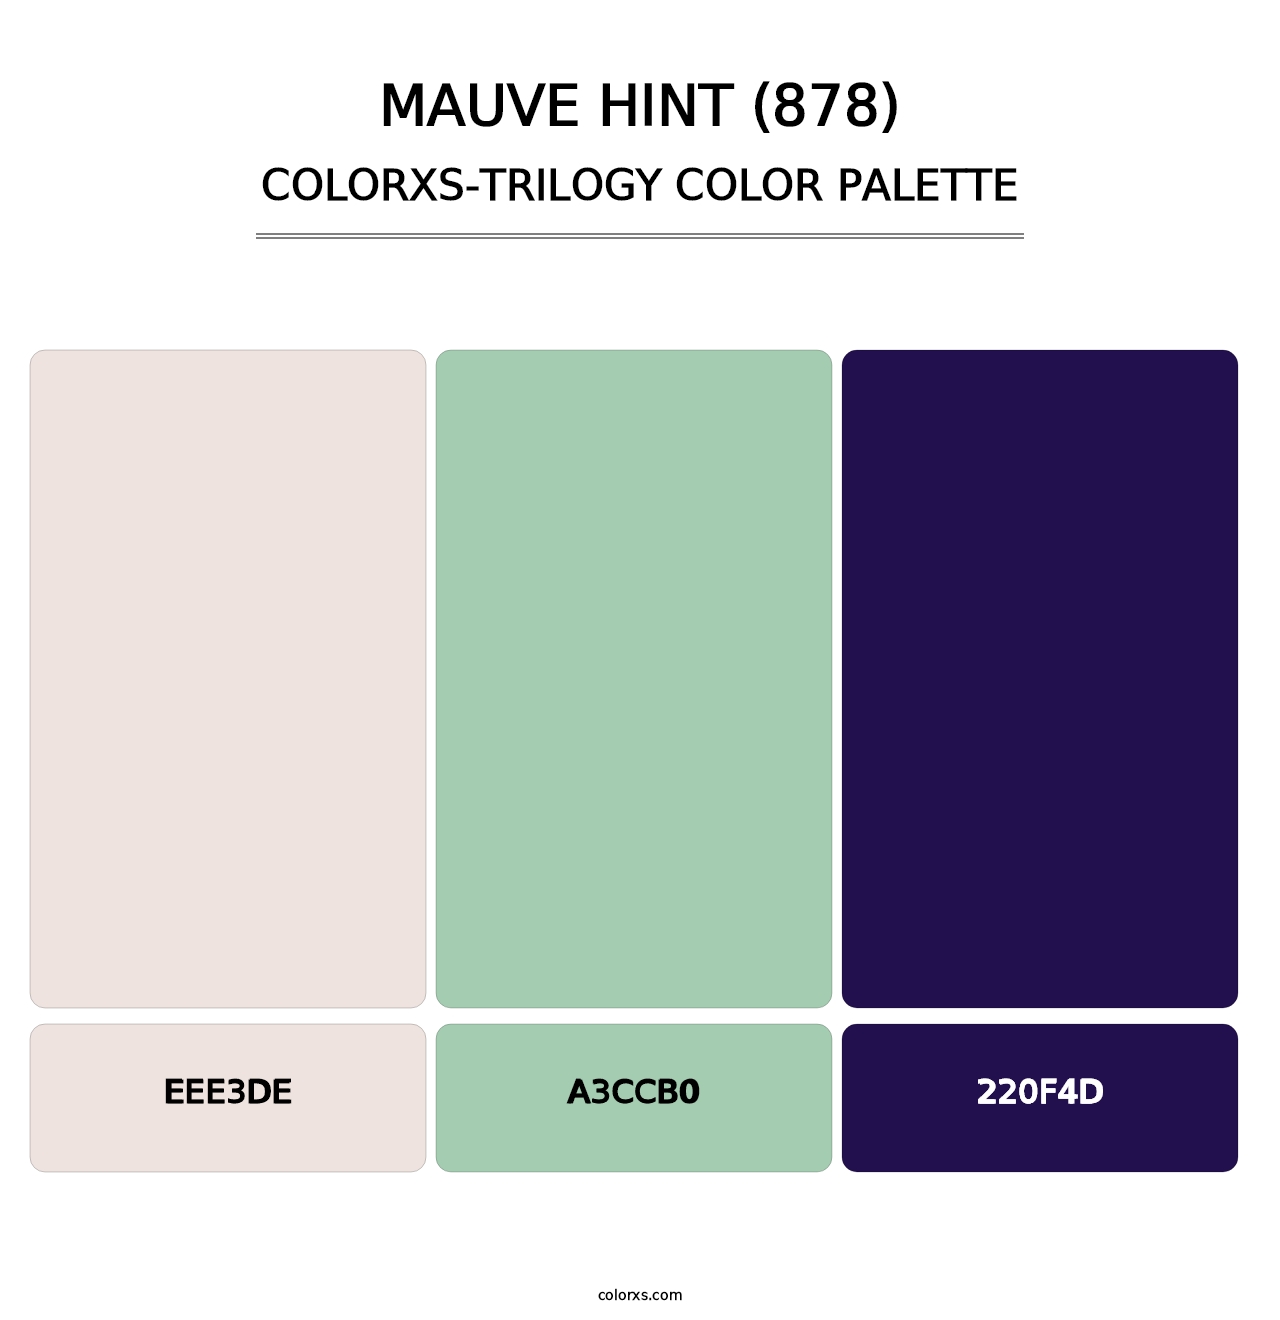 Mauve Hint (878) - Colorxs Trilogy Palette